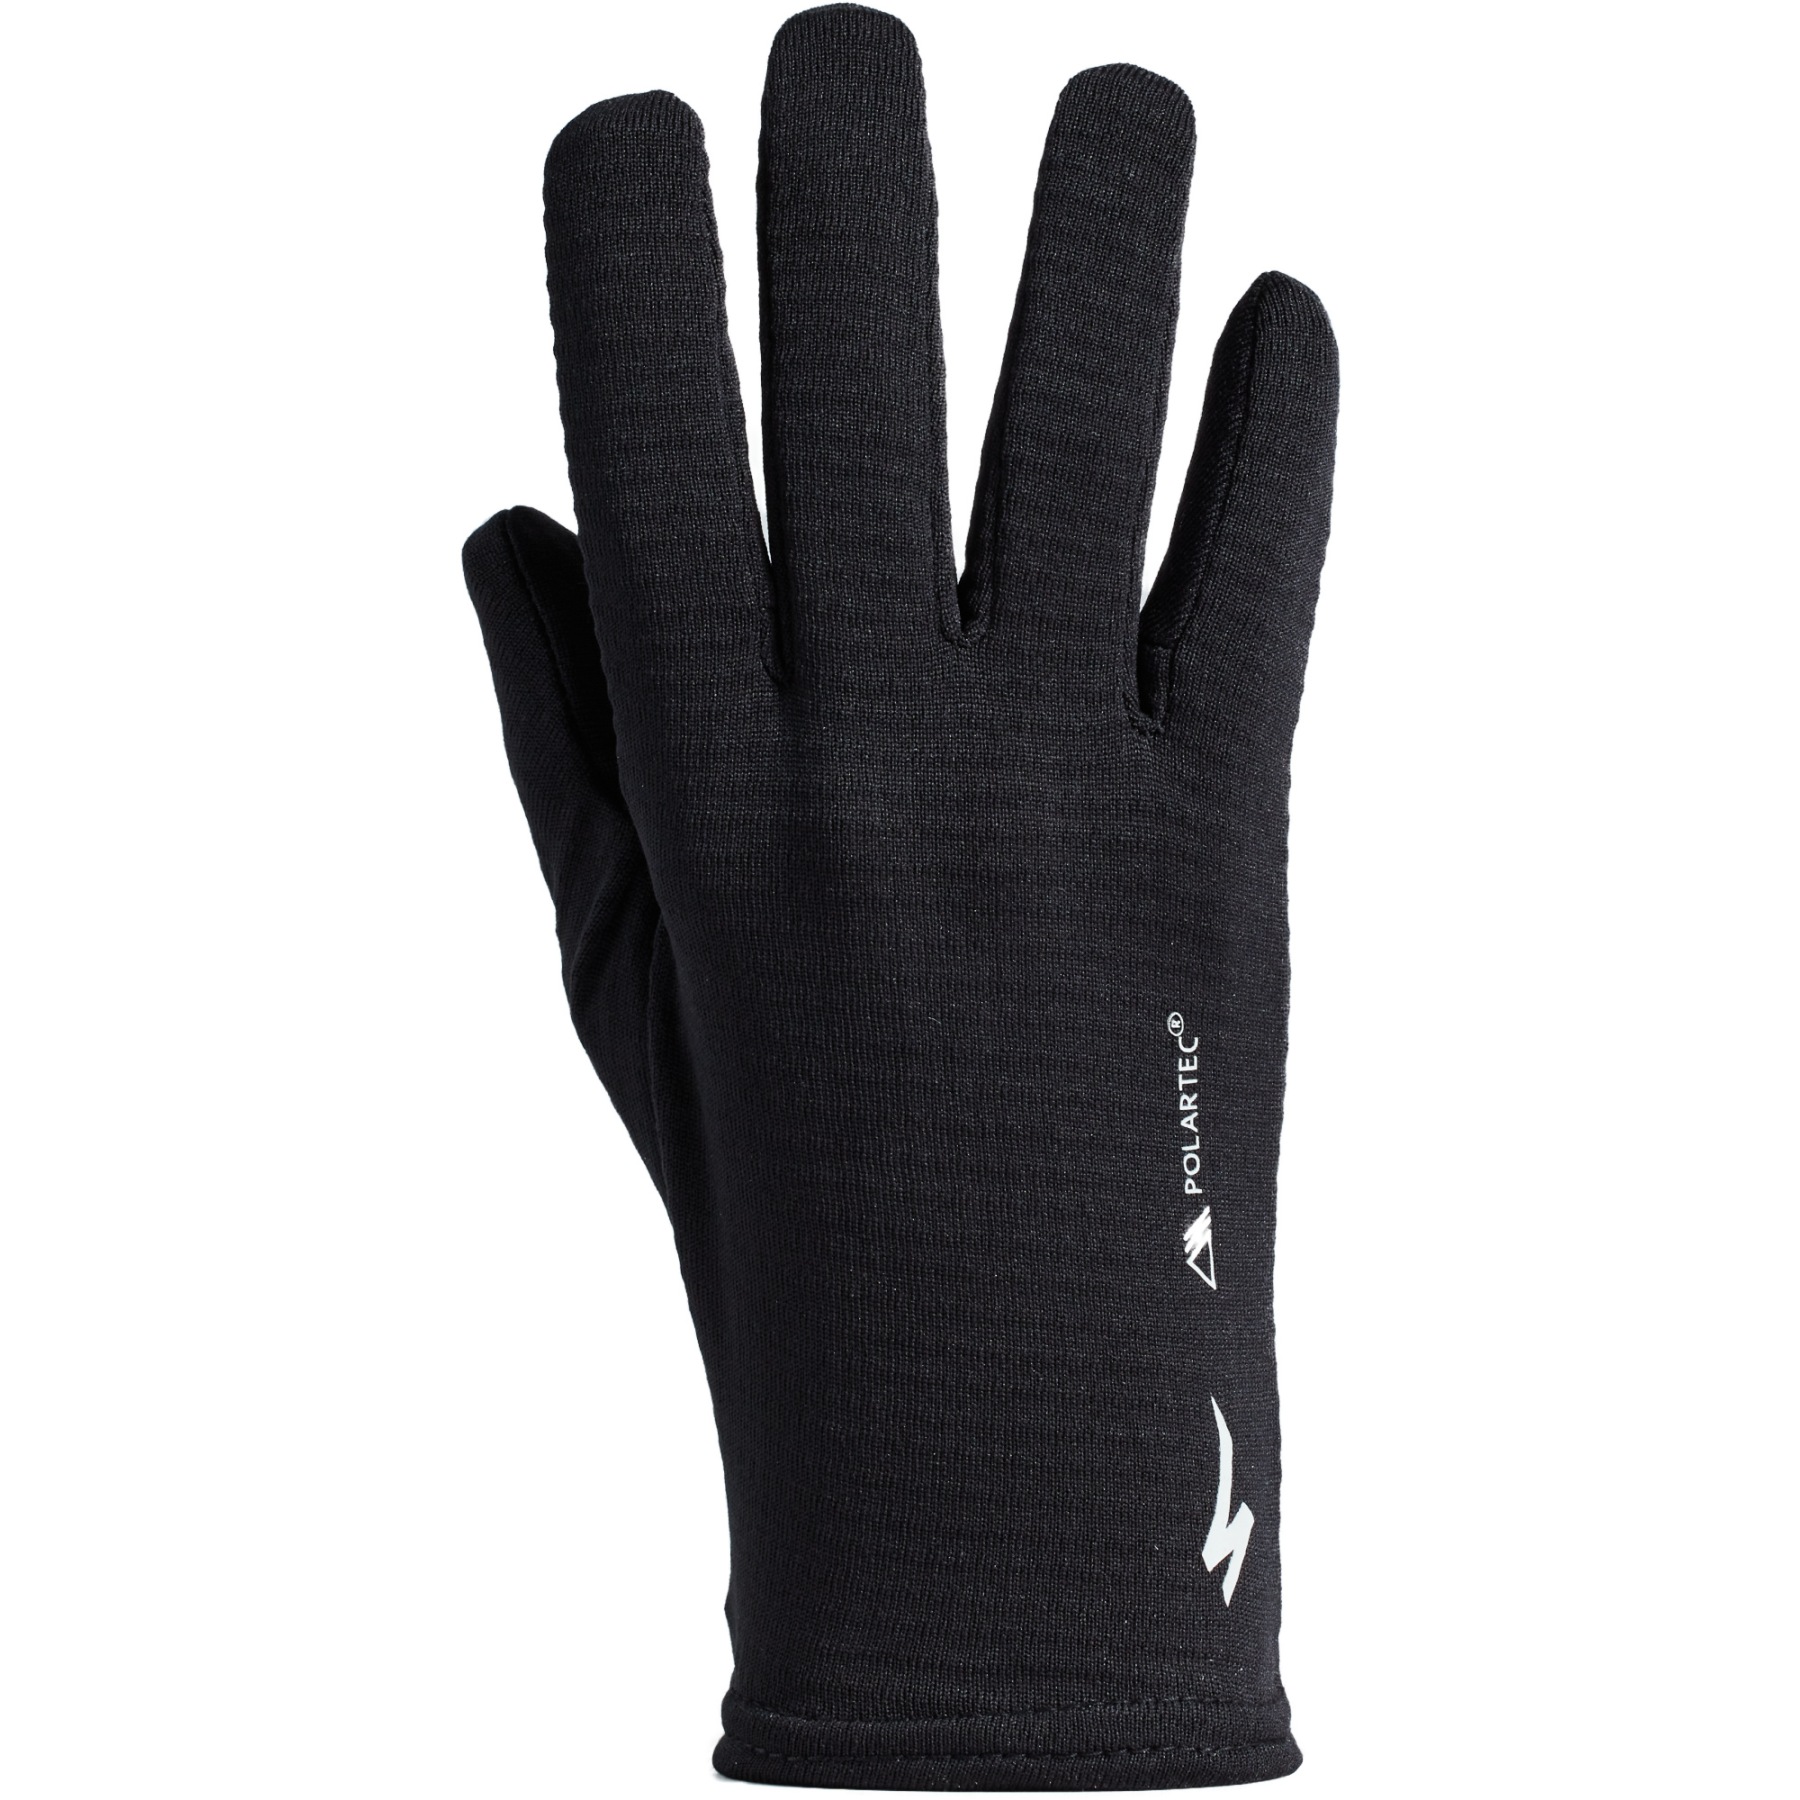 Produktbild von Specialized Thermal Liner Handschuhe - schwarz